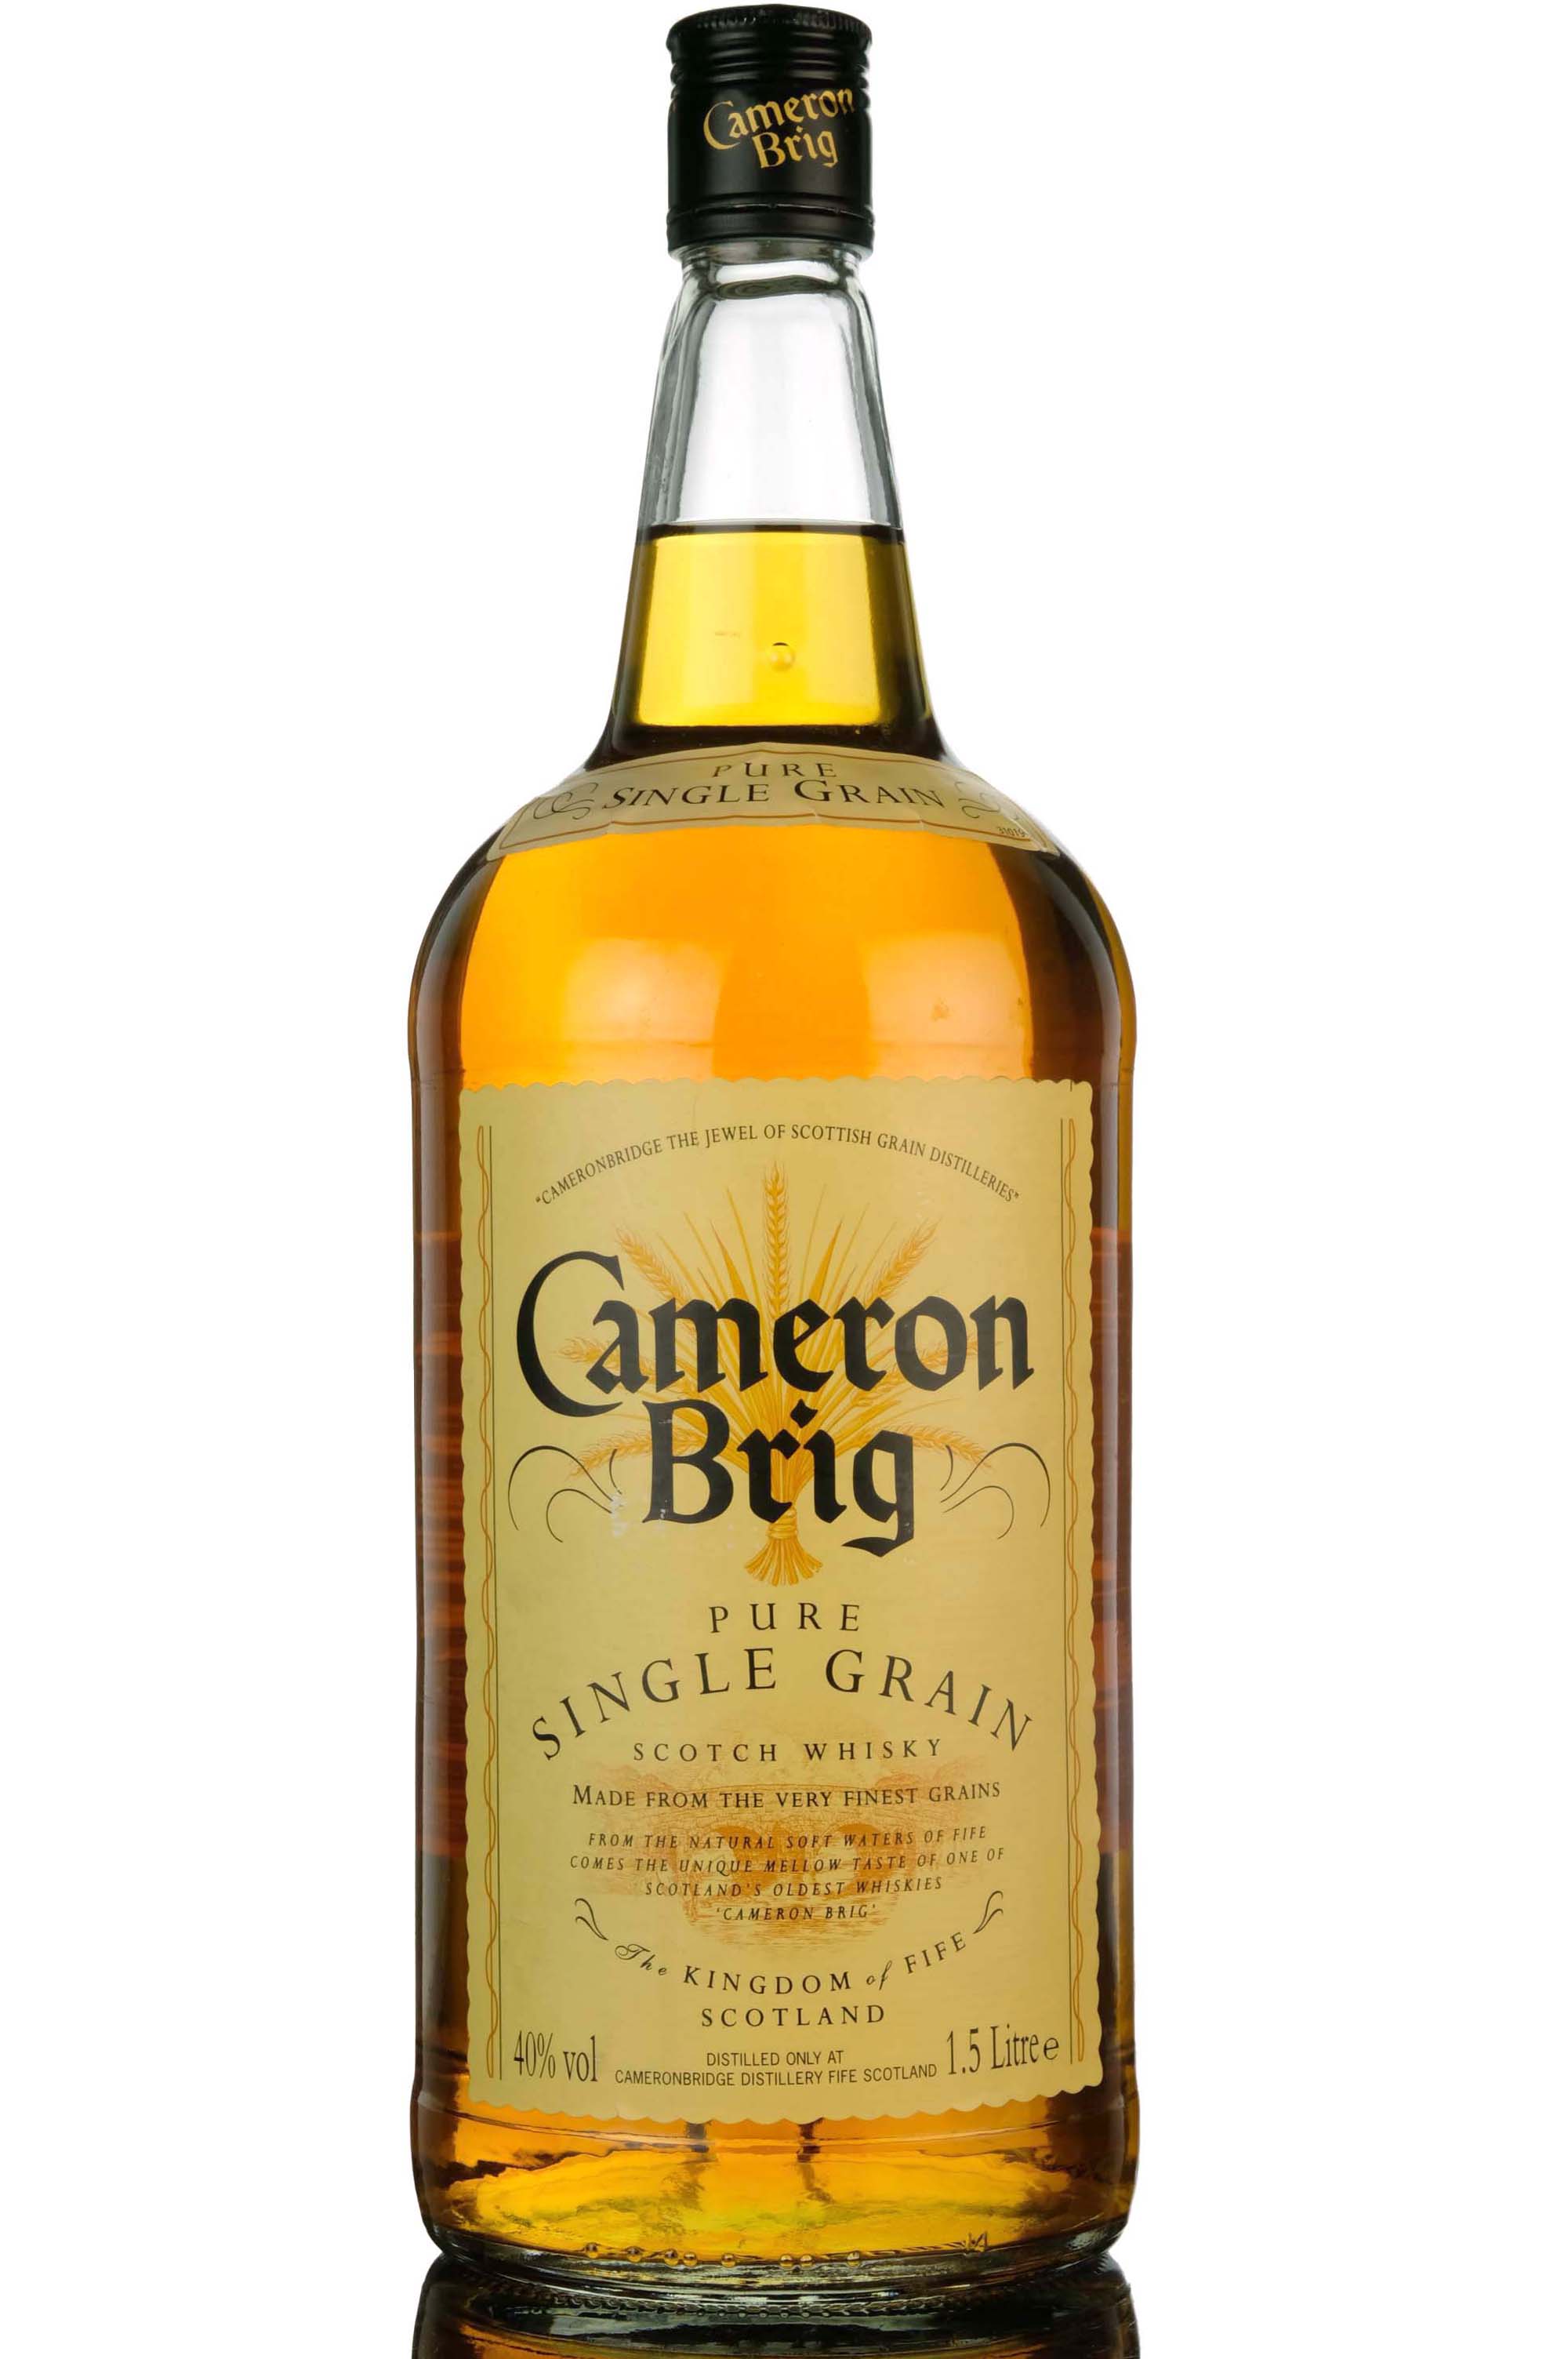 Cameronbridge Cameron Brig - 1.5 Litres